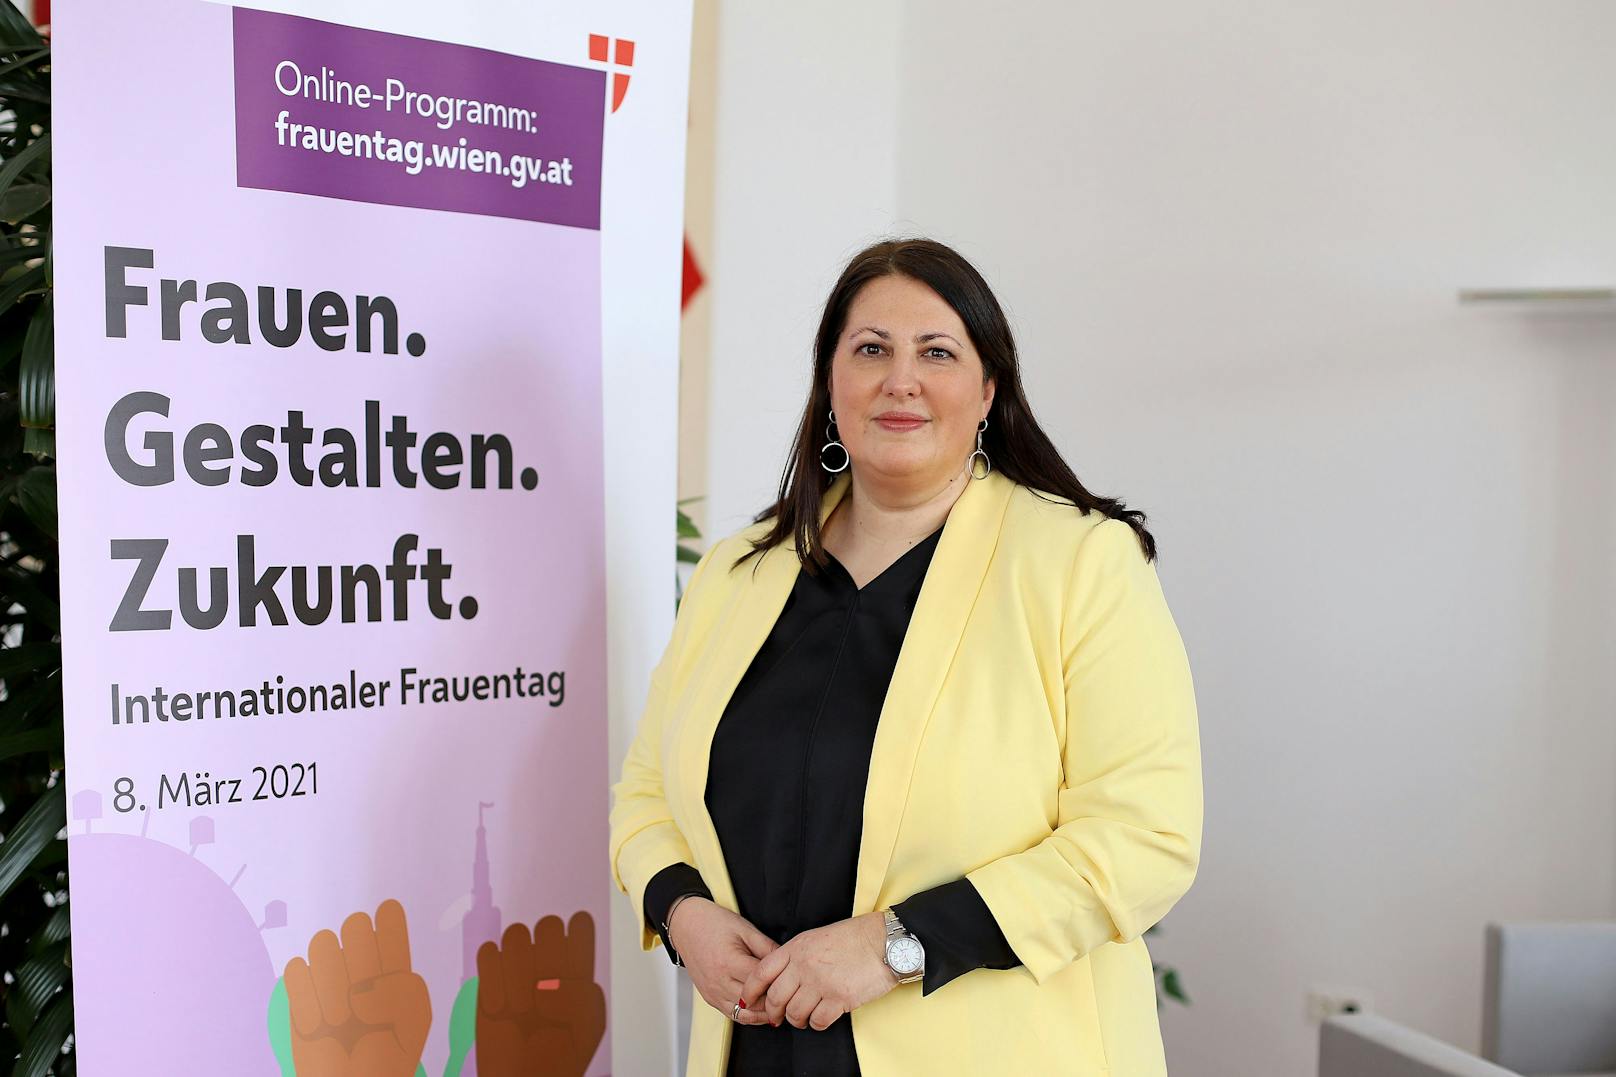 "Es ist wichtig, Frauen sichtbar zu machen. Beim Online-Frauentag holen wir starke Frauen vor den Vorhang, informieren, beraten und vernetzen – alles unter dem Motto ,Frauen. Gestalten. Zukunft.‘", so Vizebürgermeisterin und Frauenstadträtin Kathrin Gaal (SPÖ).